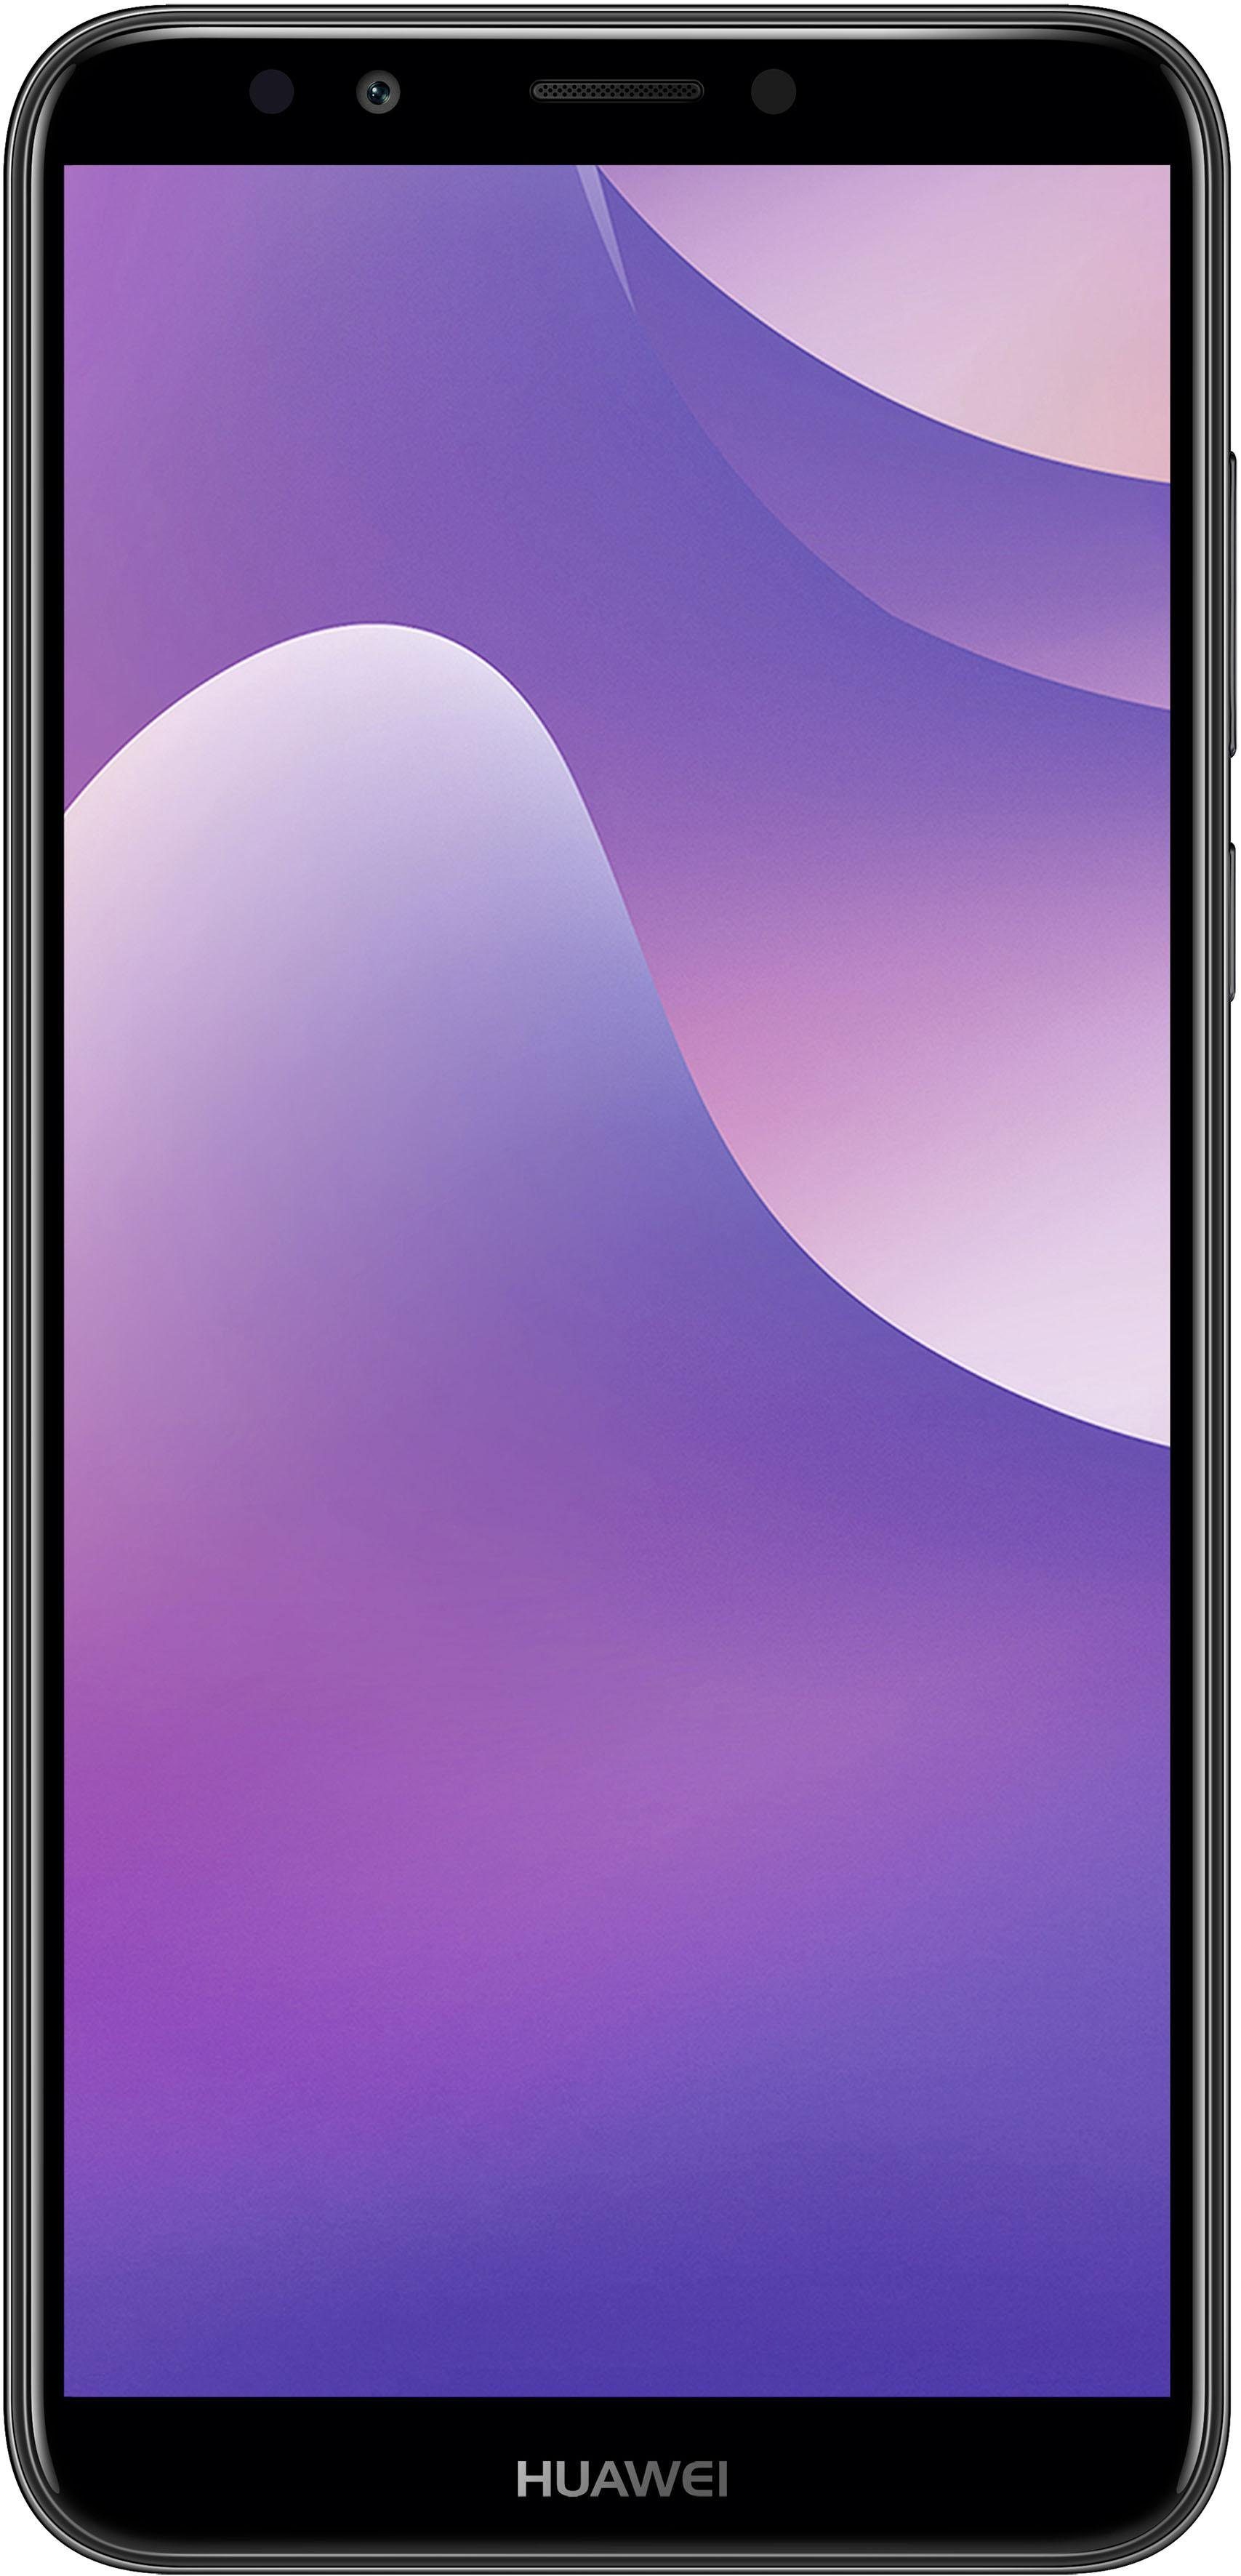 Otto - Huawei Huawei Y7 (2018) smartphone (15,2 cm / 5,99 inch, 16 GB, 13 MP-camera)